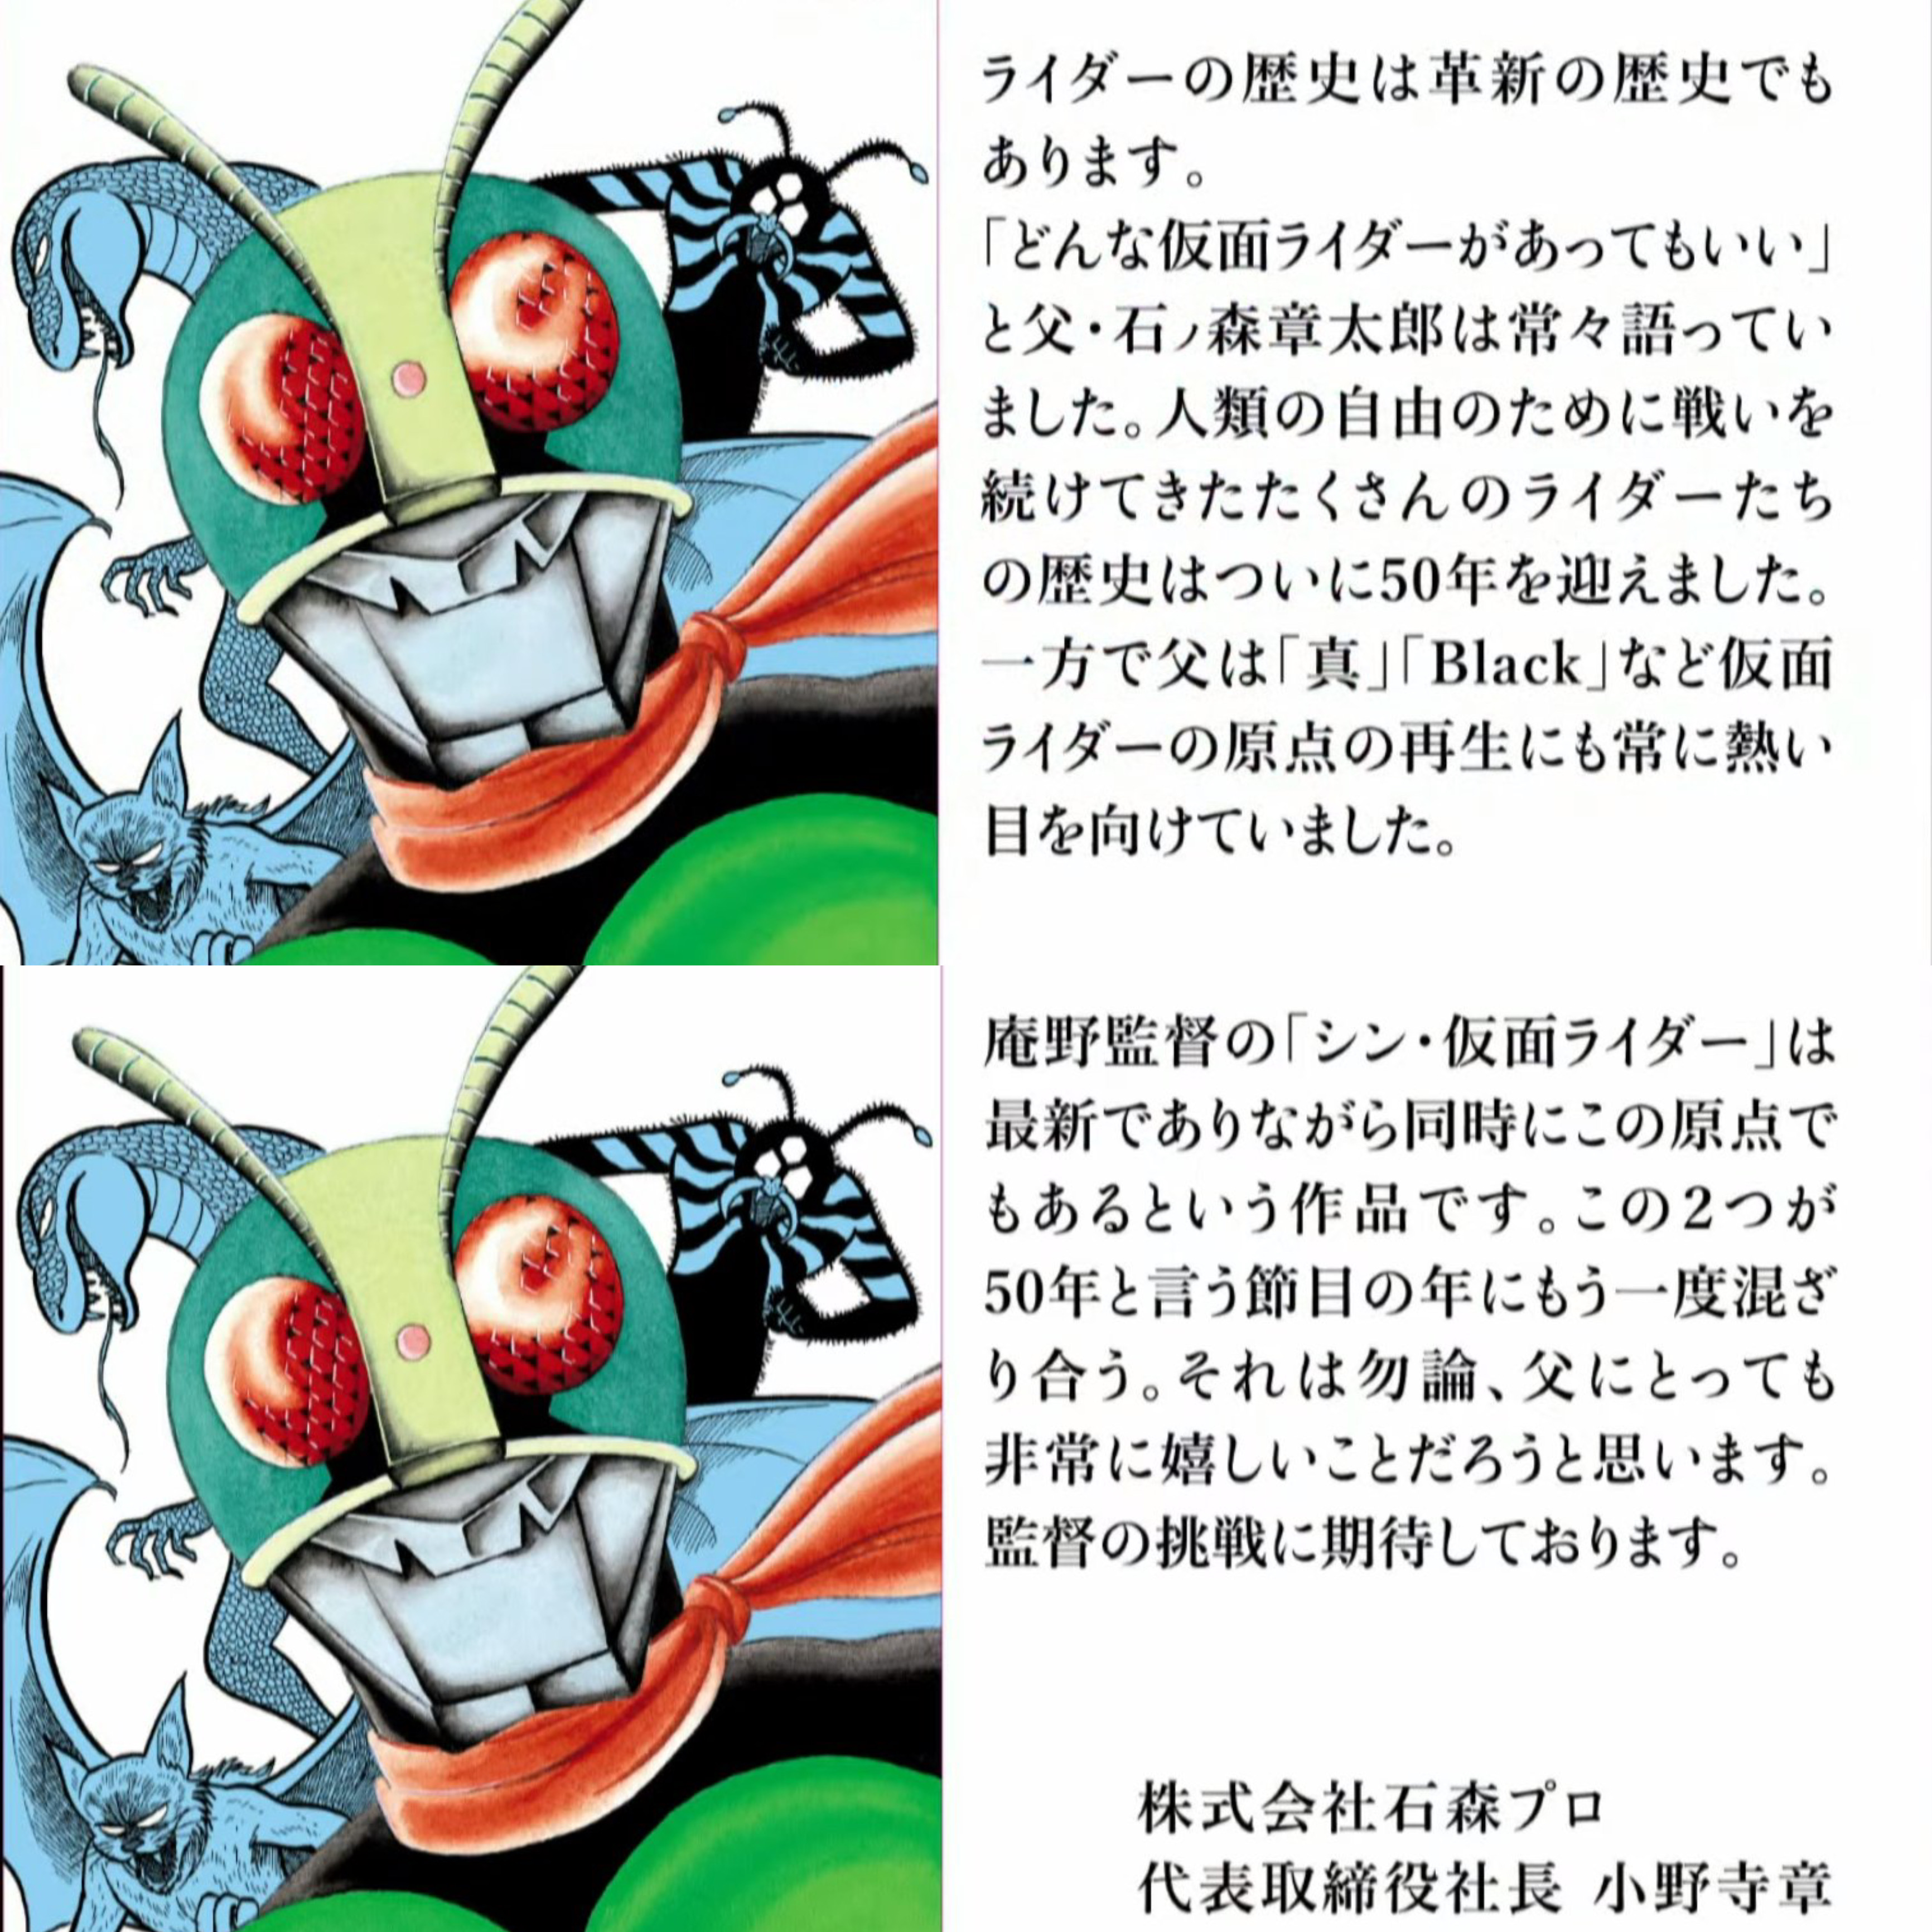 庵野秀明氏総監督 シン仮面ライダー 23年3月公開決定 ネット 冗談で言ってた多かったのにマジで出てきたなシン仮面ライダー 画族